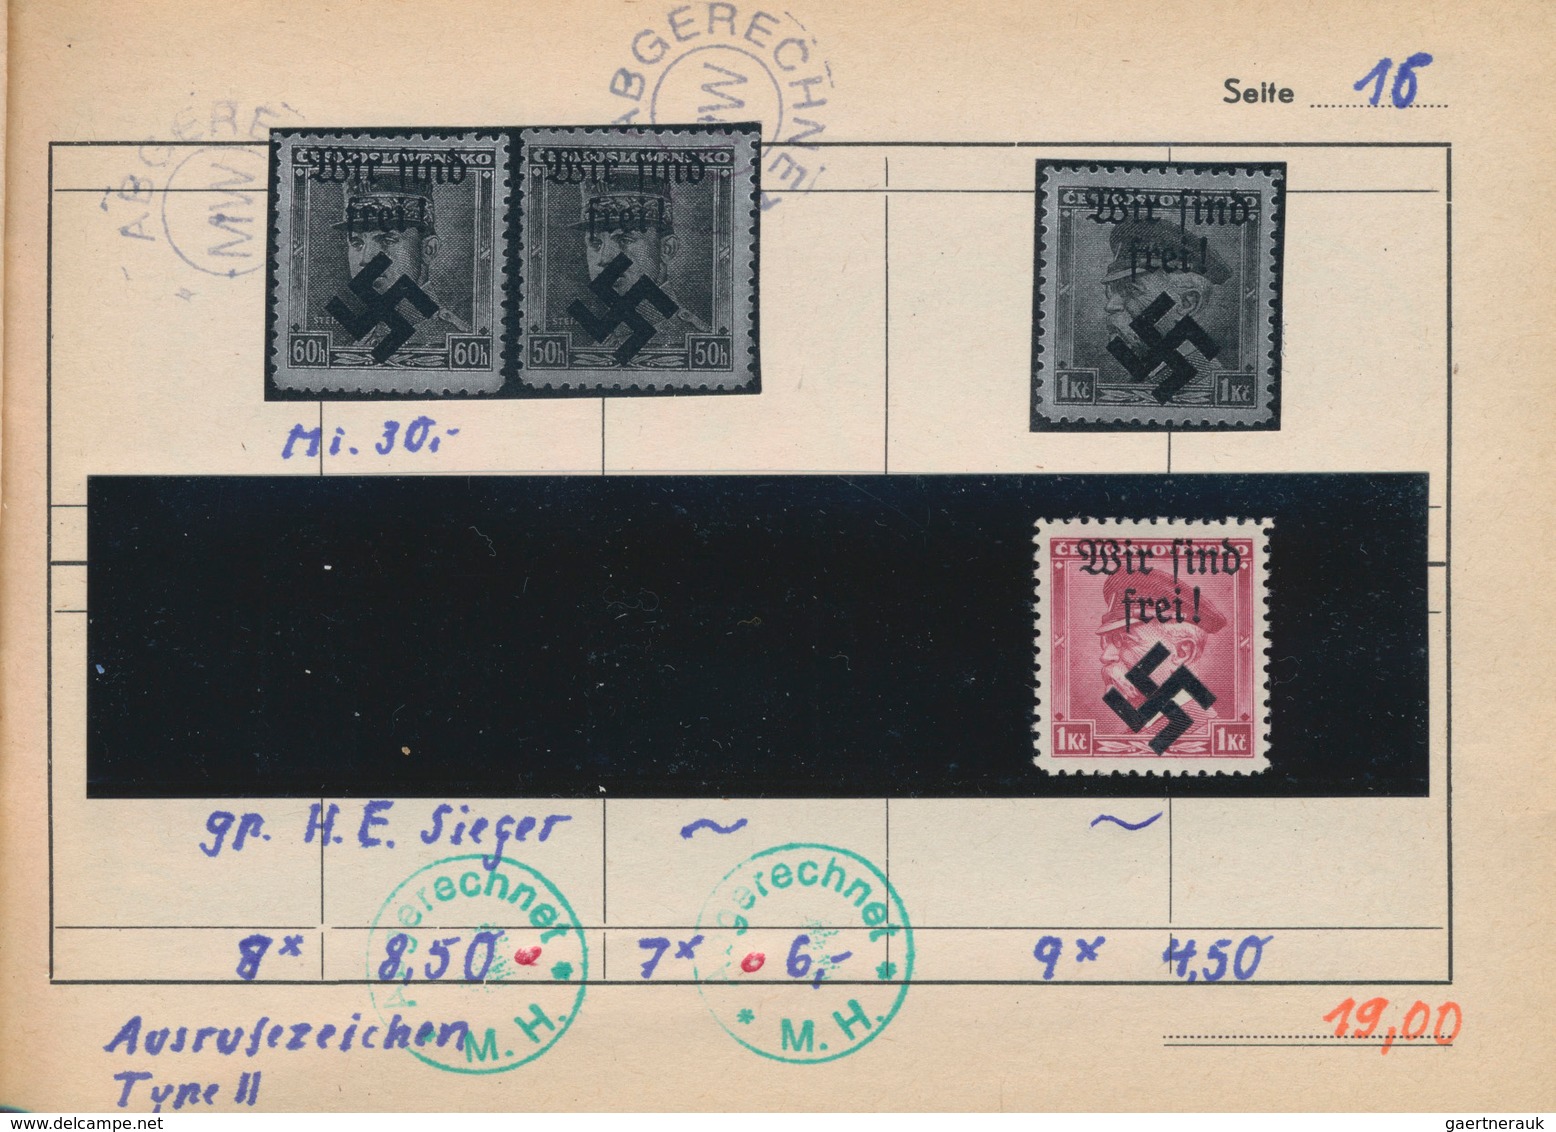 Sudetenland: 1938/1941, saubere Partie incl. etwas Böhmen und Mähren, dabei Asch MiNr. 1, 2, 5, Reic